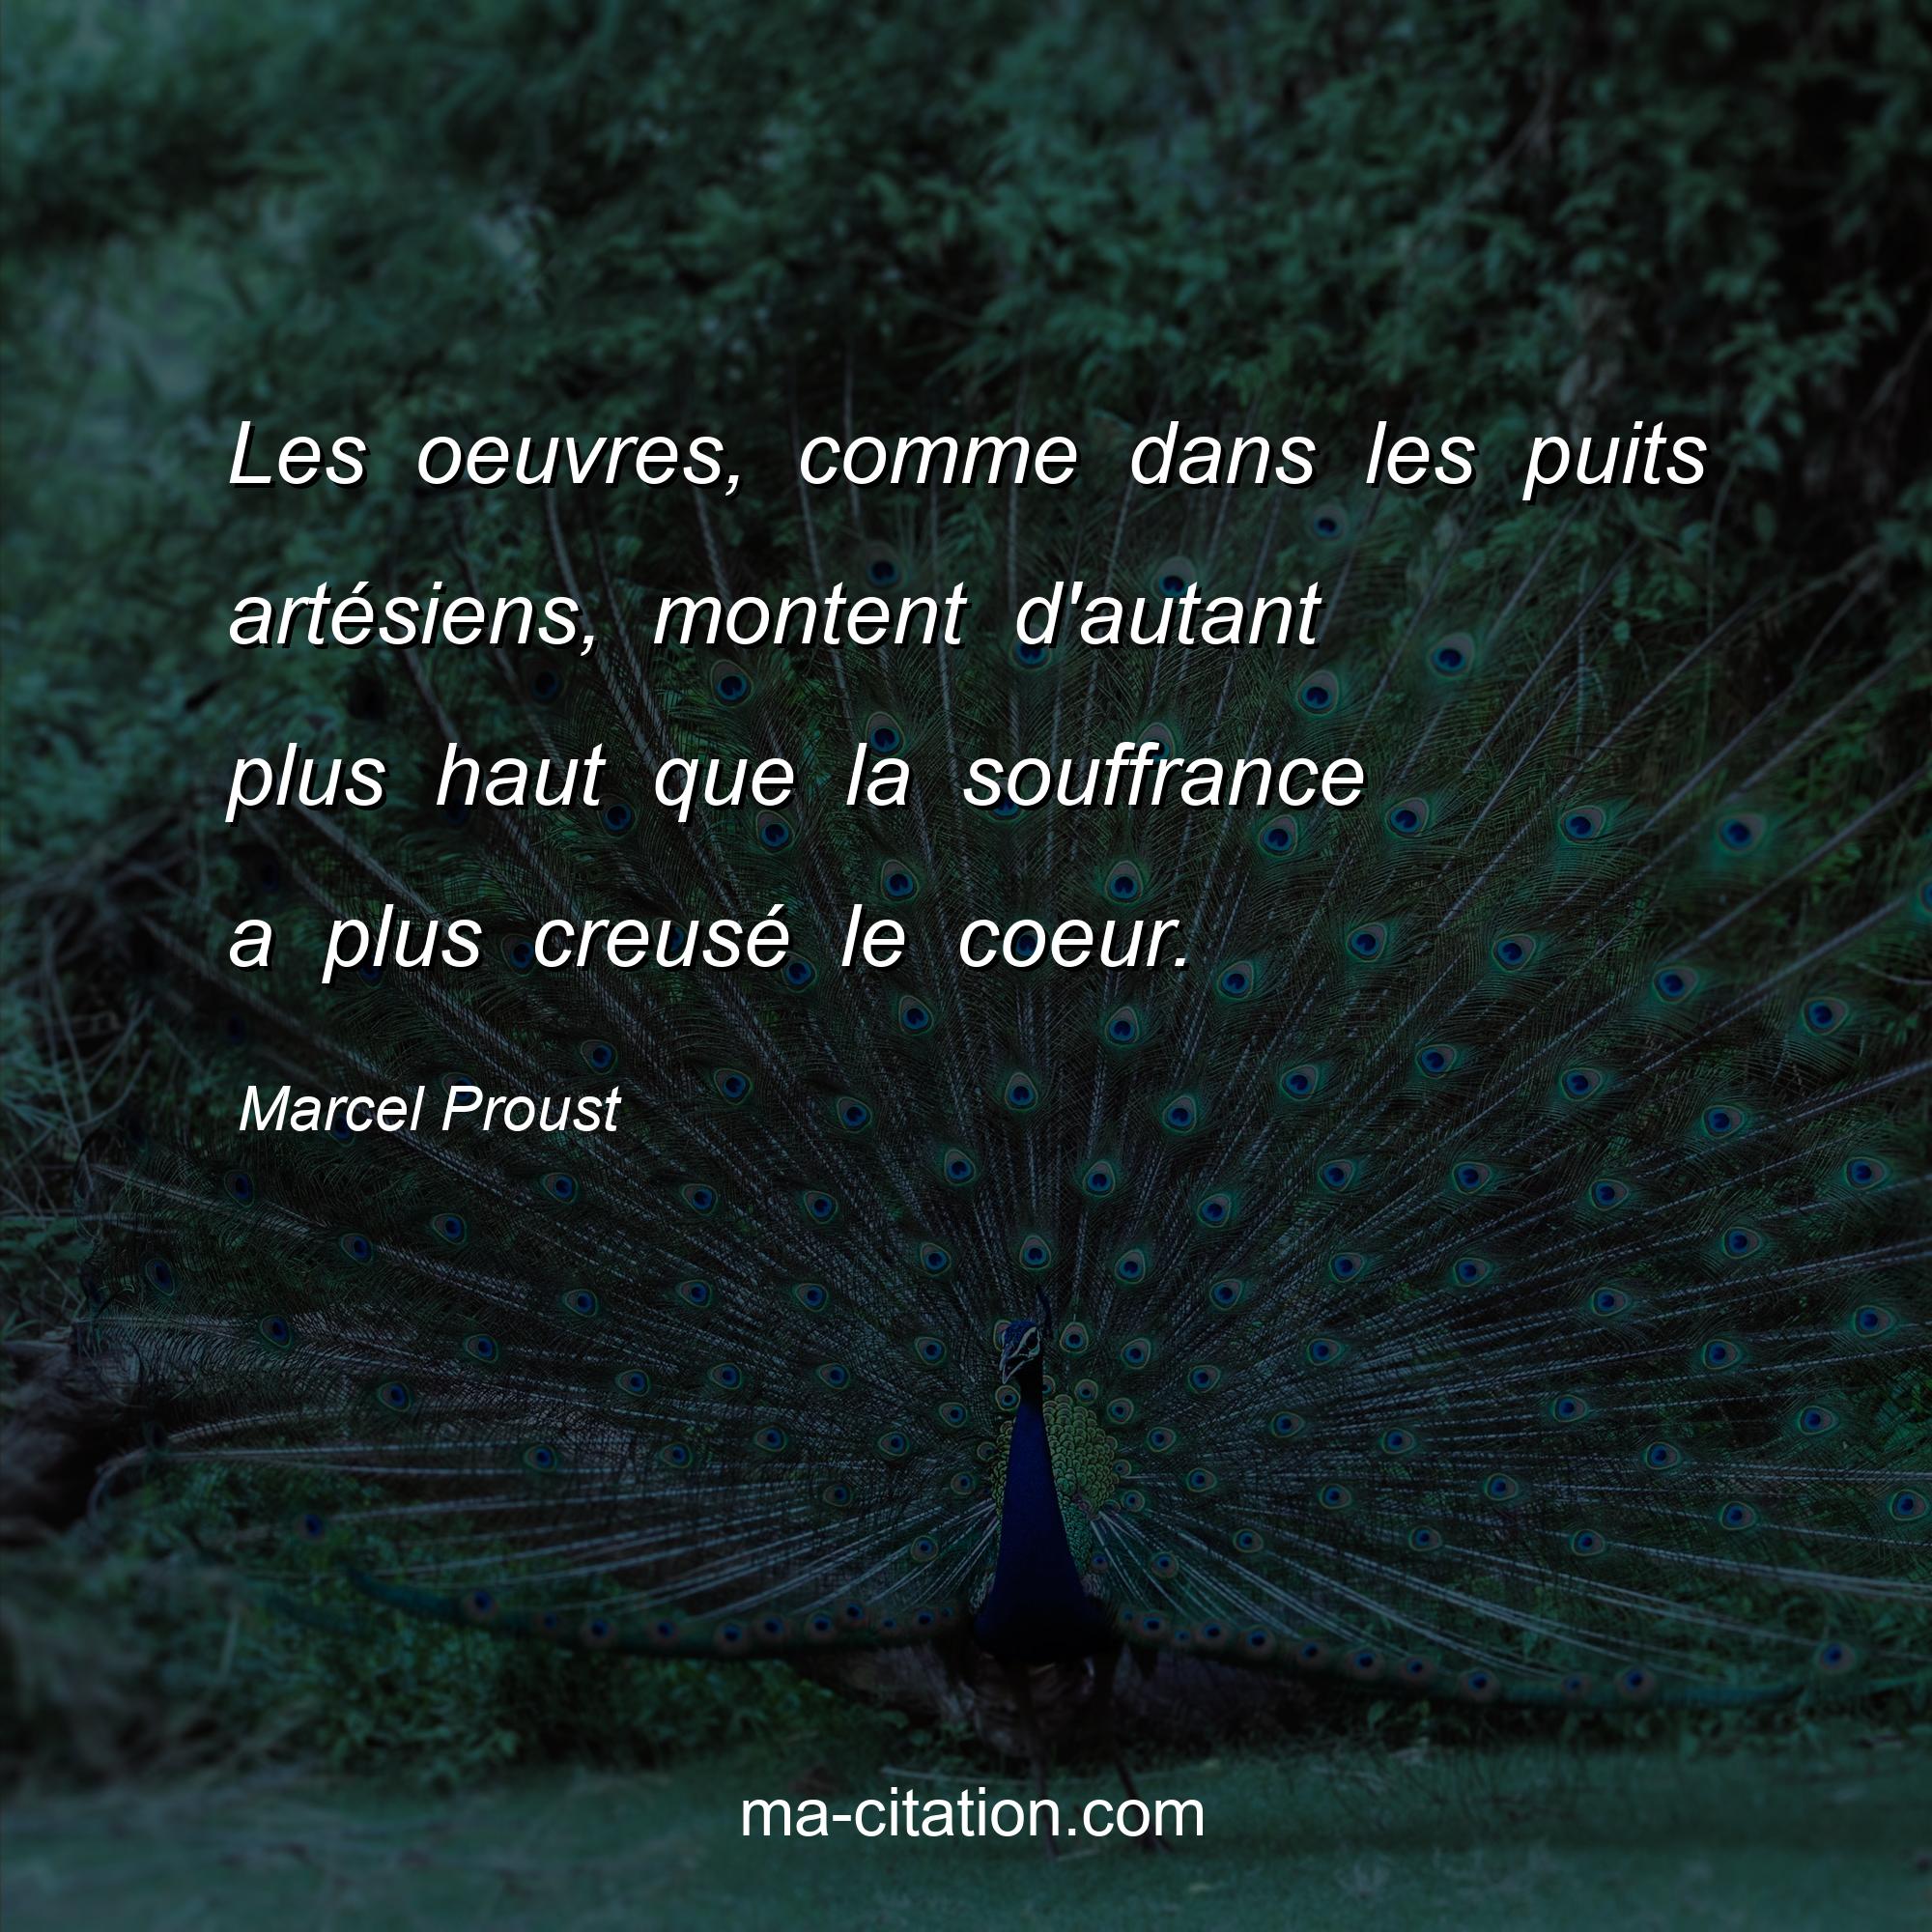 Marcel Proust : Les oeuvres, comme dans les puits artésiens, montent d'autant plus haut que la souffrance a plus creusé le coeur.